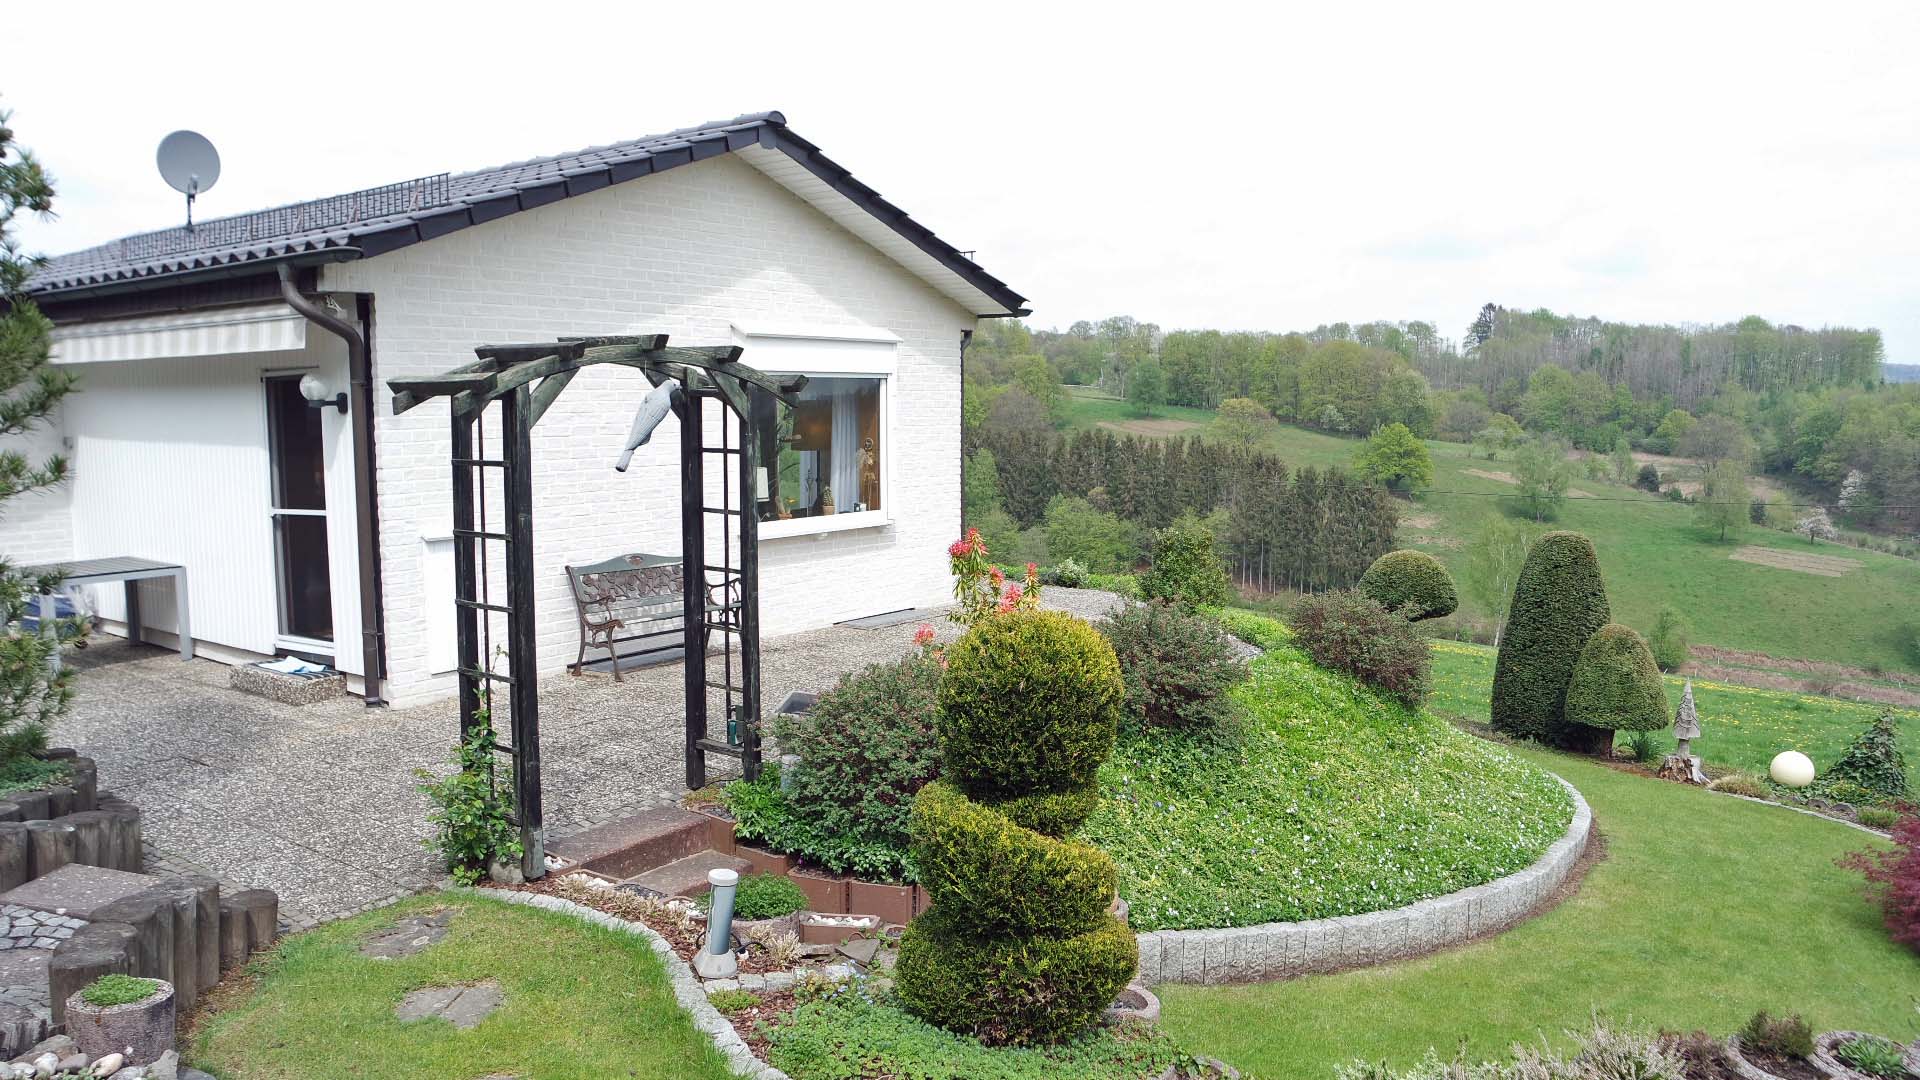 Morsbach-Böcklingen: Freier Blick ins Grüne - kleiner Bungalow in Höhenlage, 50 m² Terrasse mit Blick rund um den Süd-Giebel